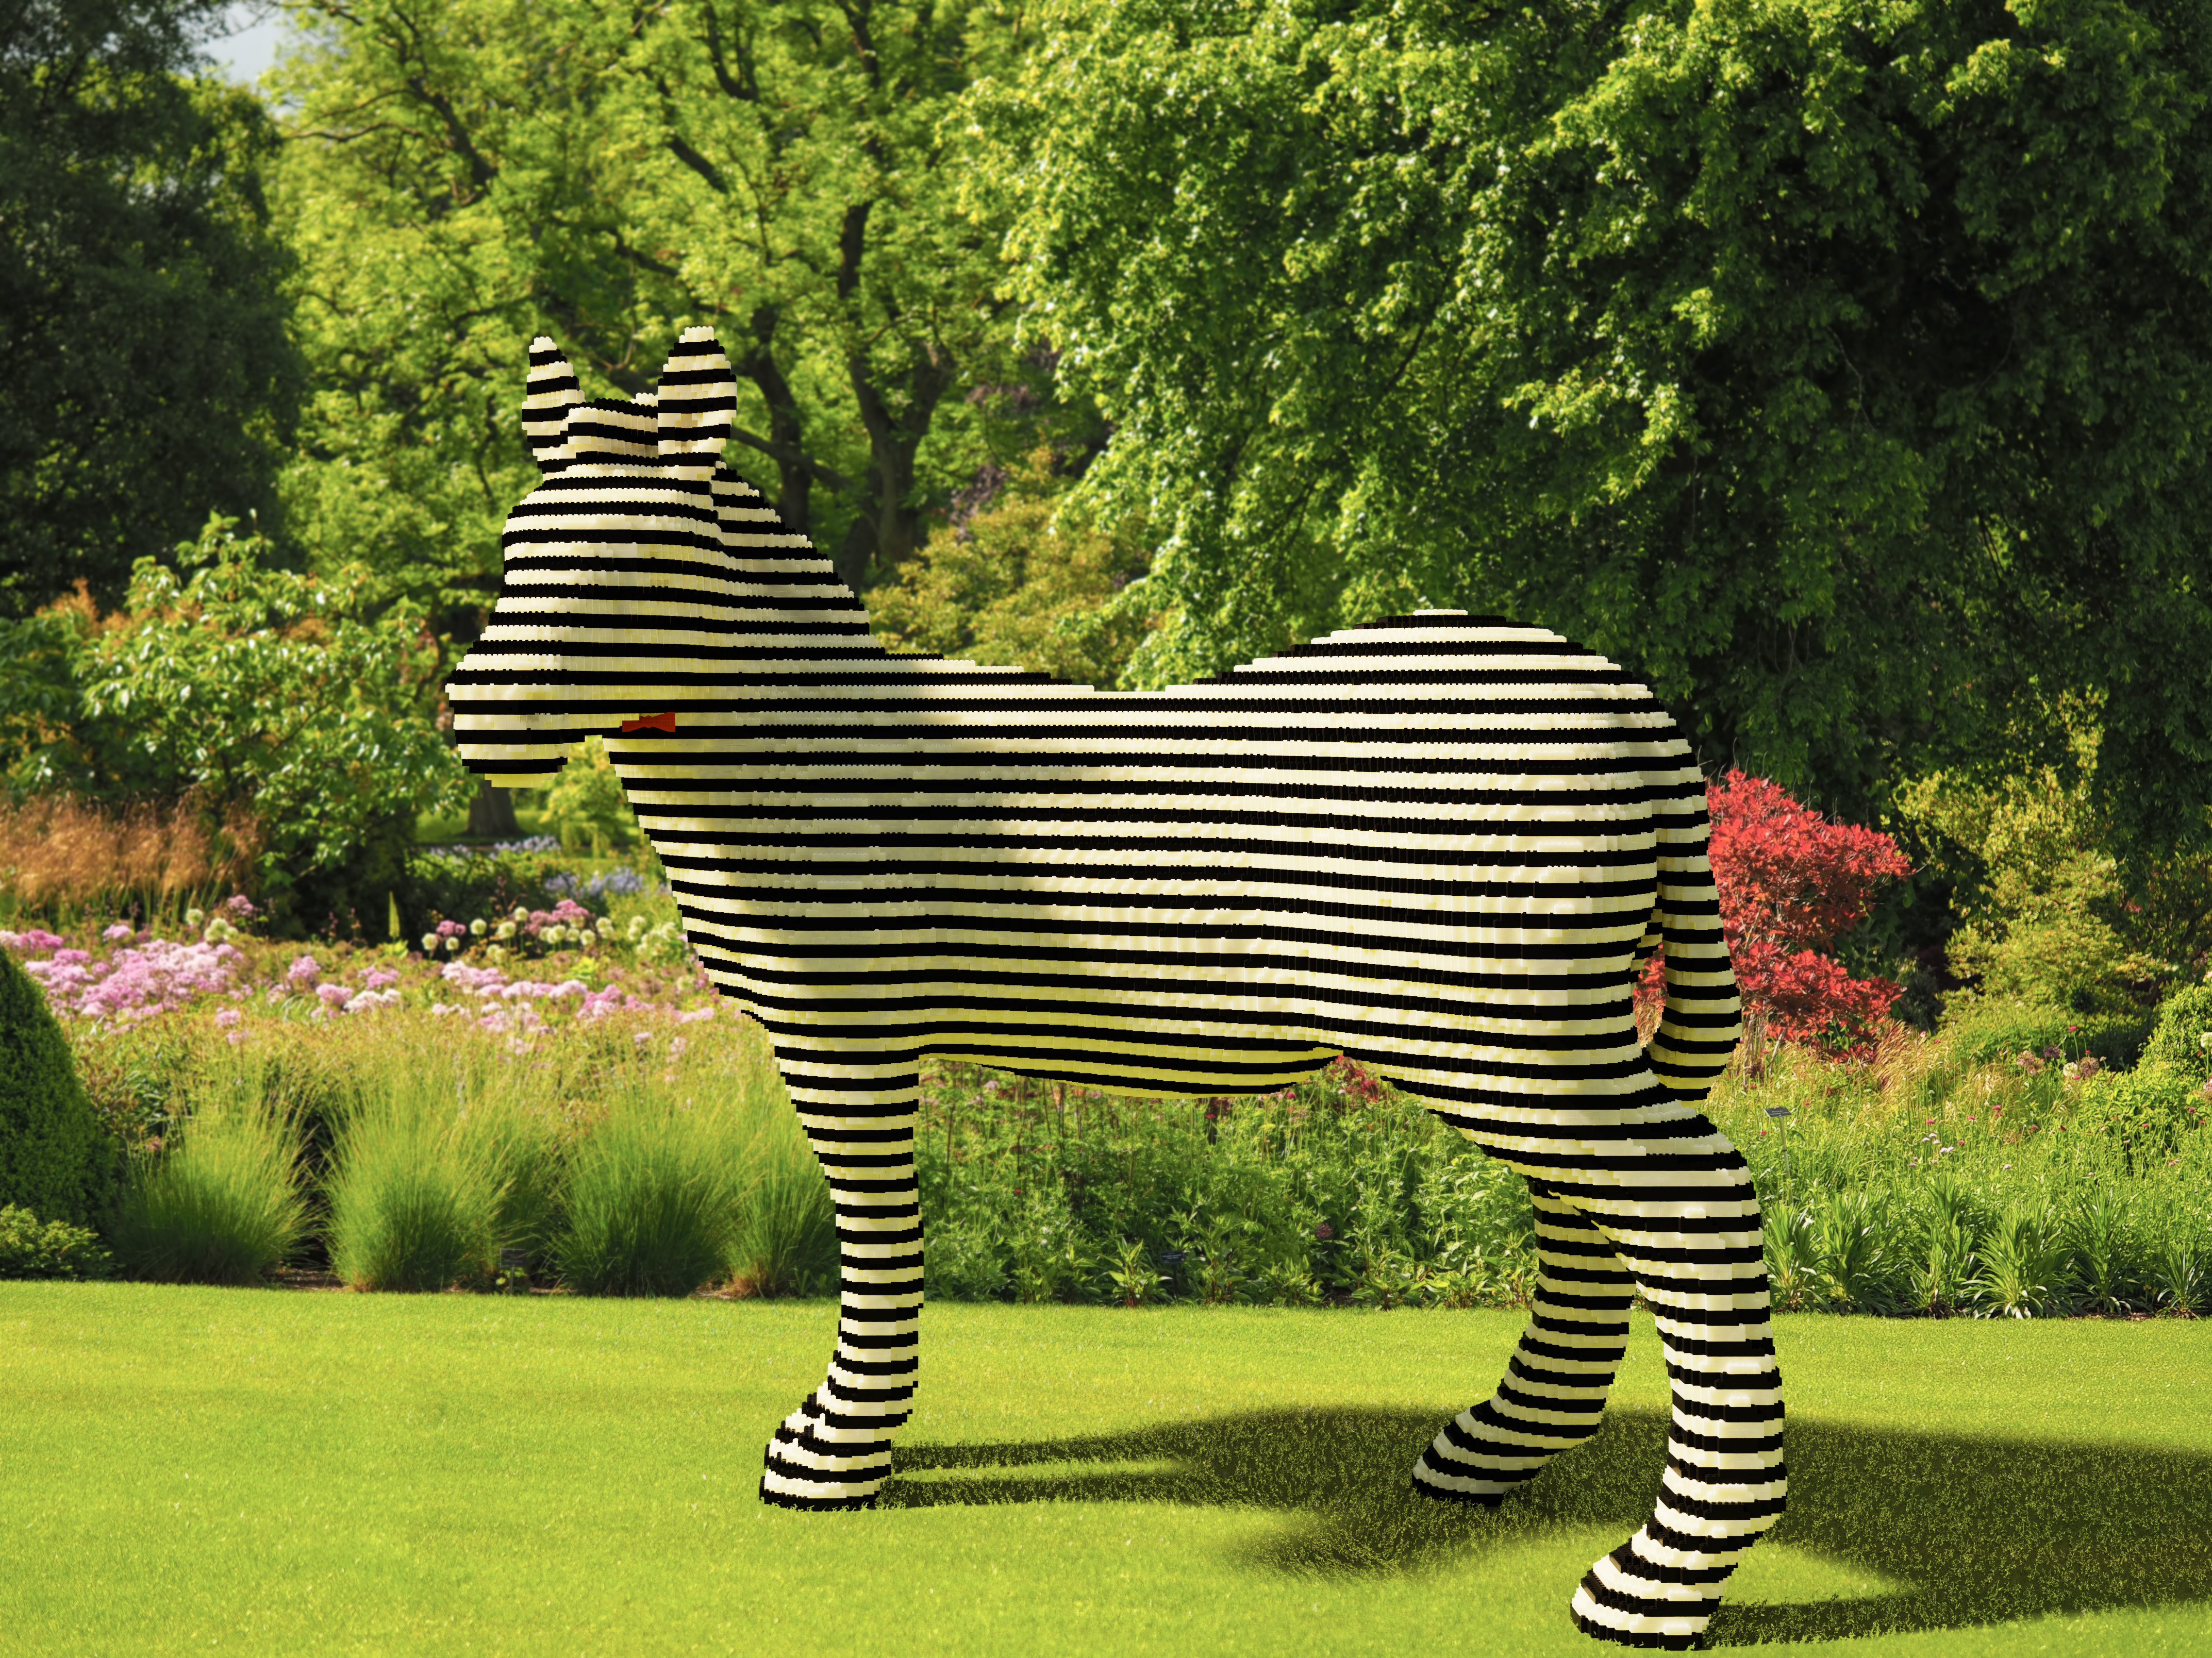 Best LEGO model - Fancy Zebra